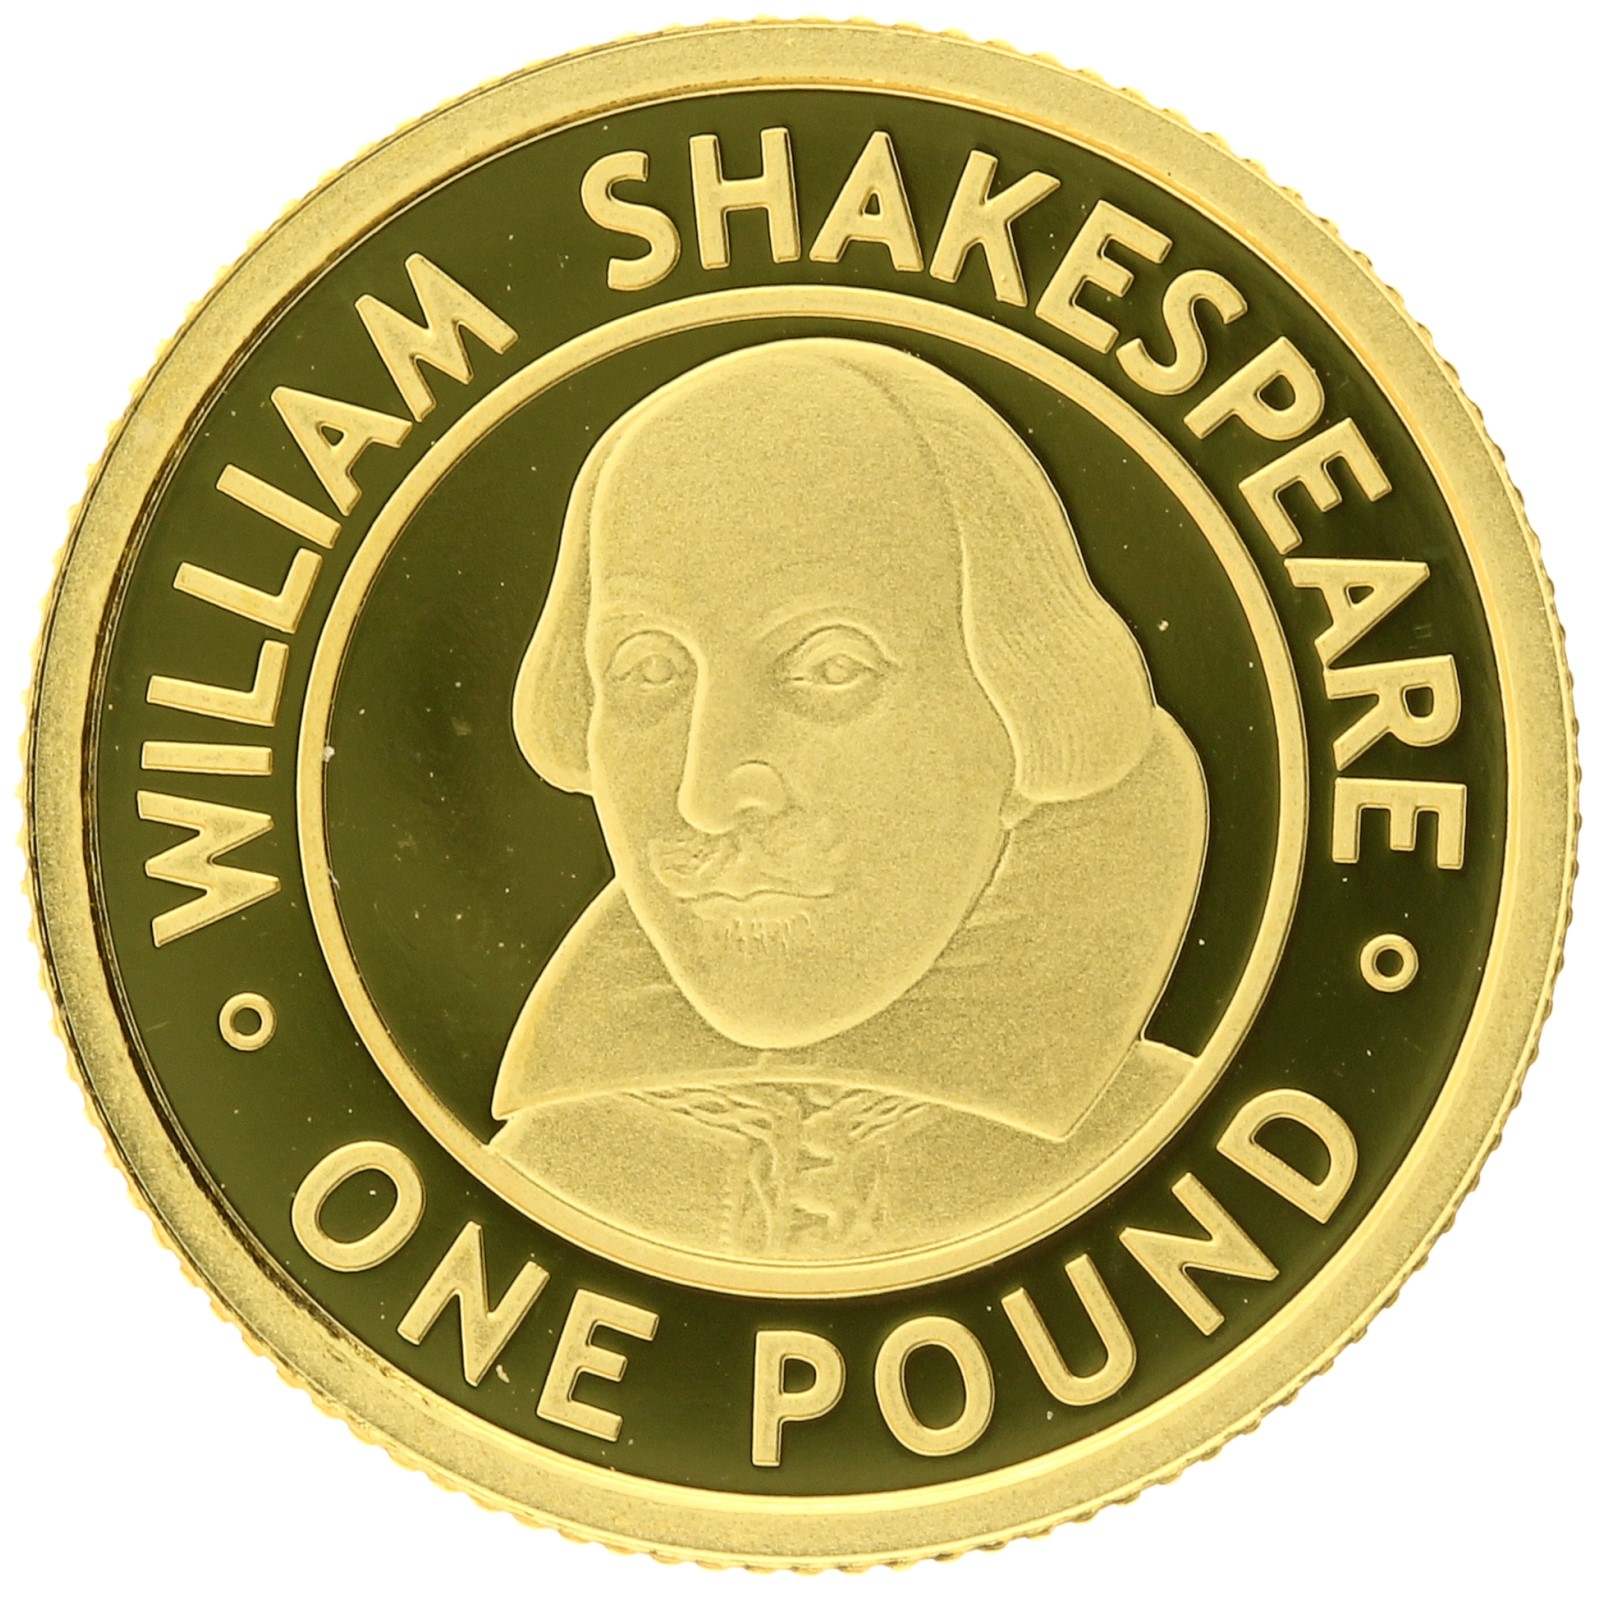 Alderney - 1 pound - 2006 - William Shakespeare  - 1/25oz